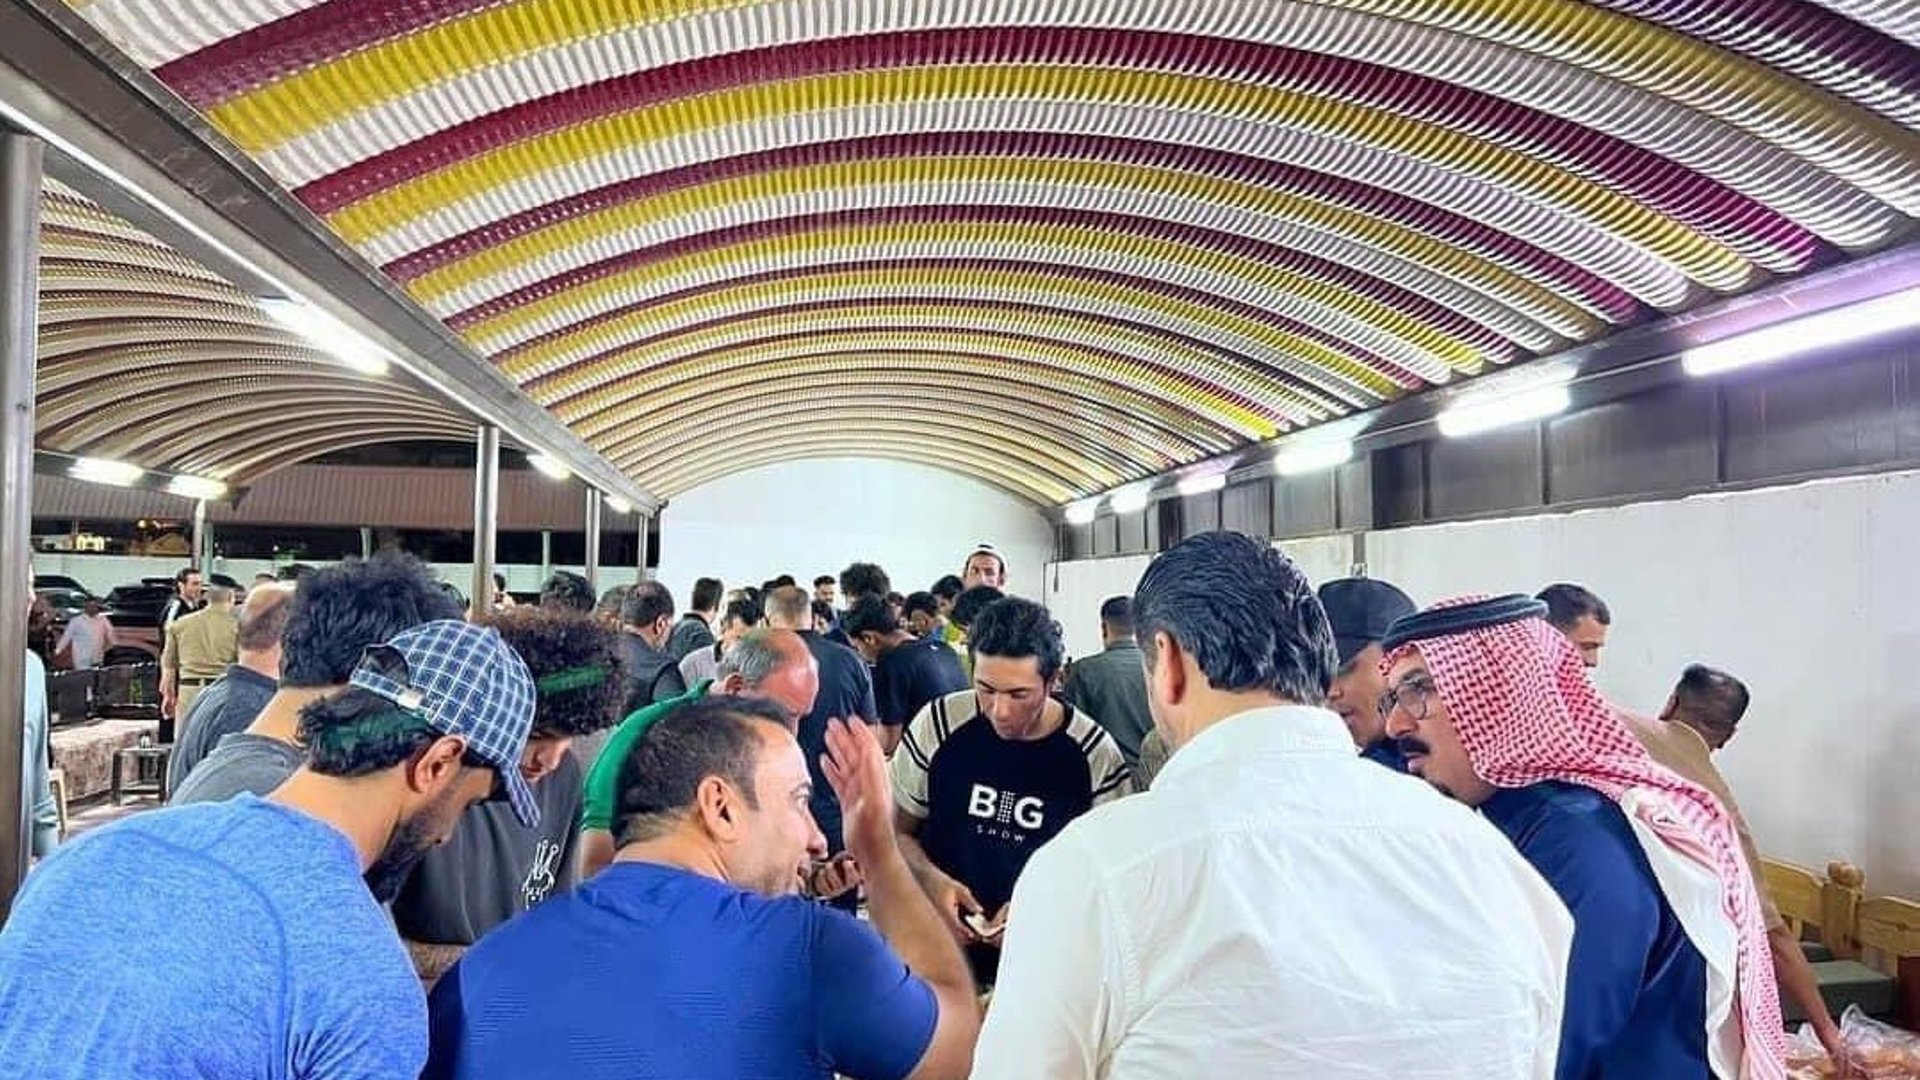 بعد إشكال الإقامة.. وليمة غداء للاعبي الناصرية في مضيف الشيخ ياسر المهنا (صور)